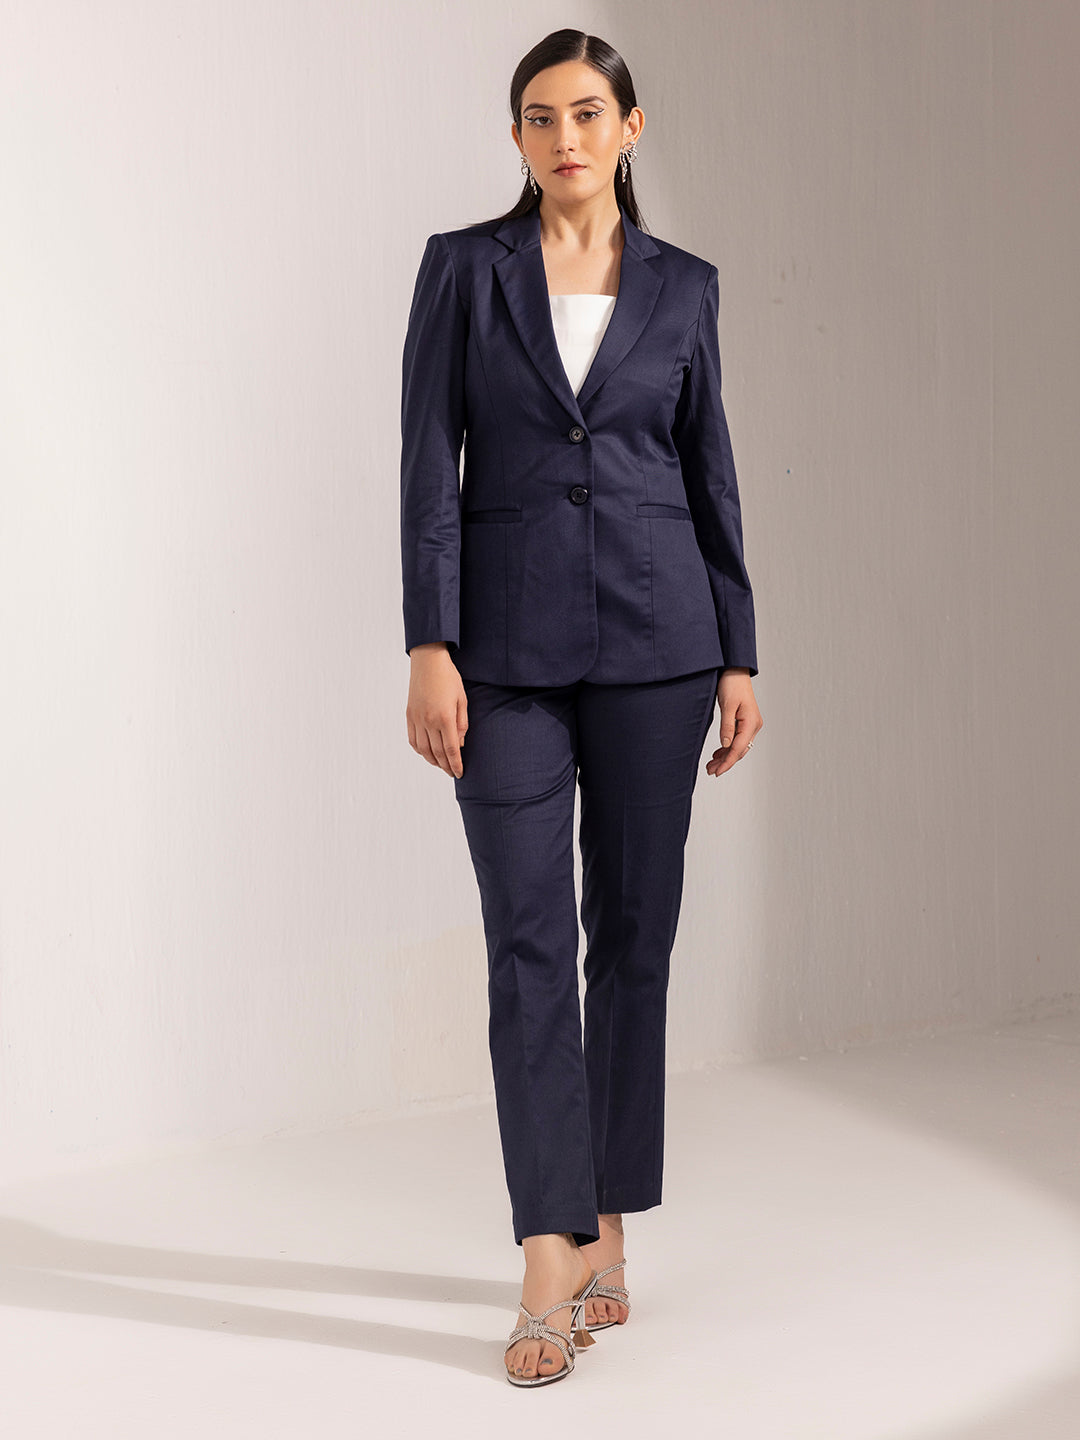 PANT SUITS Women, Women Suit Grey, Dress Suit Women, Business Suit Women,  Women Tailored Suit, Two Piece Suit Women -  Canada